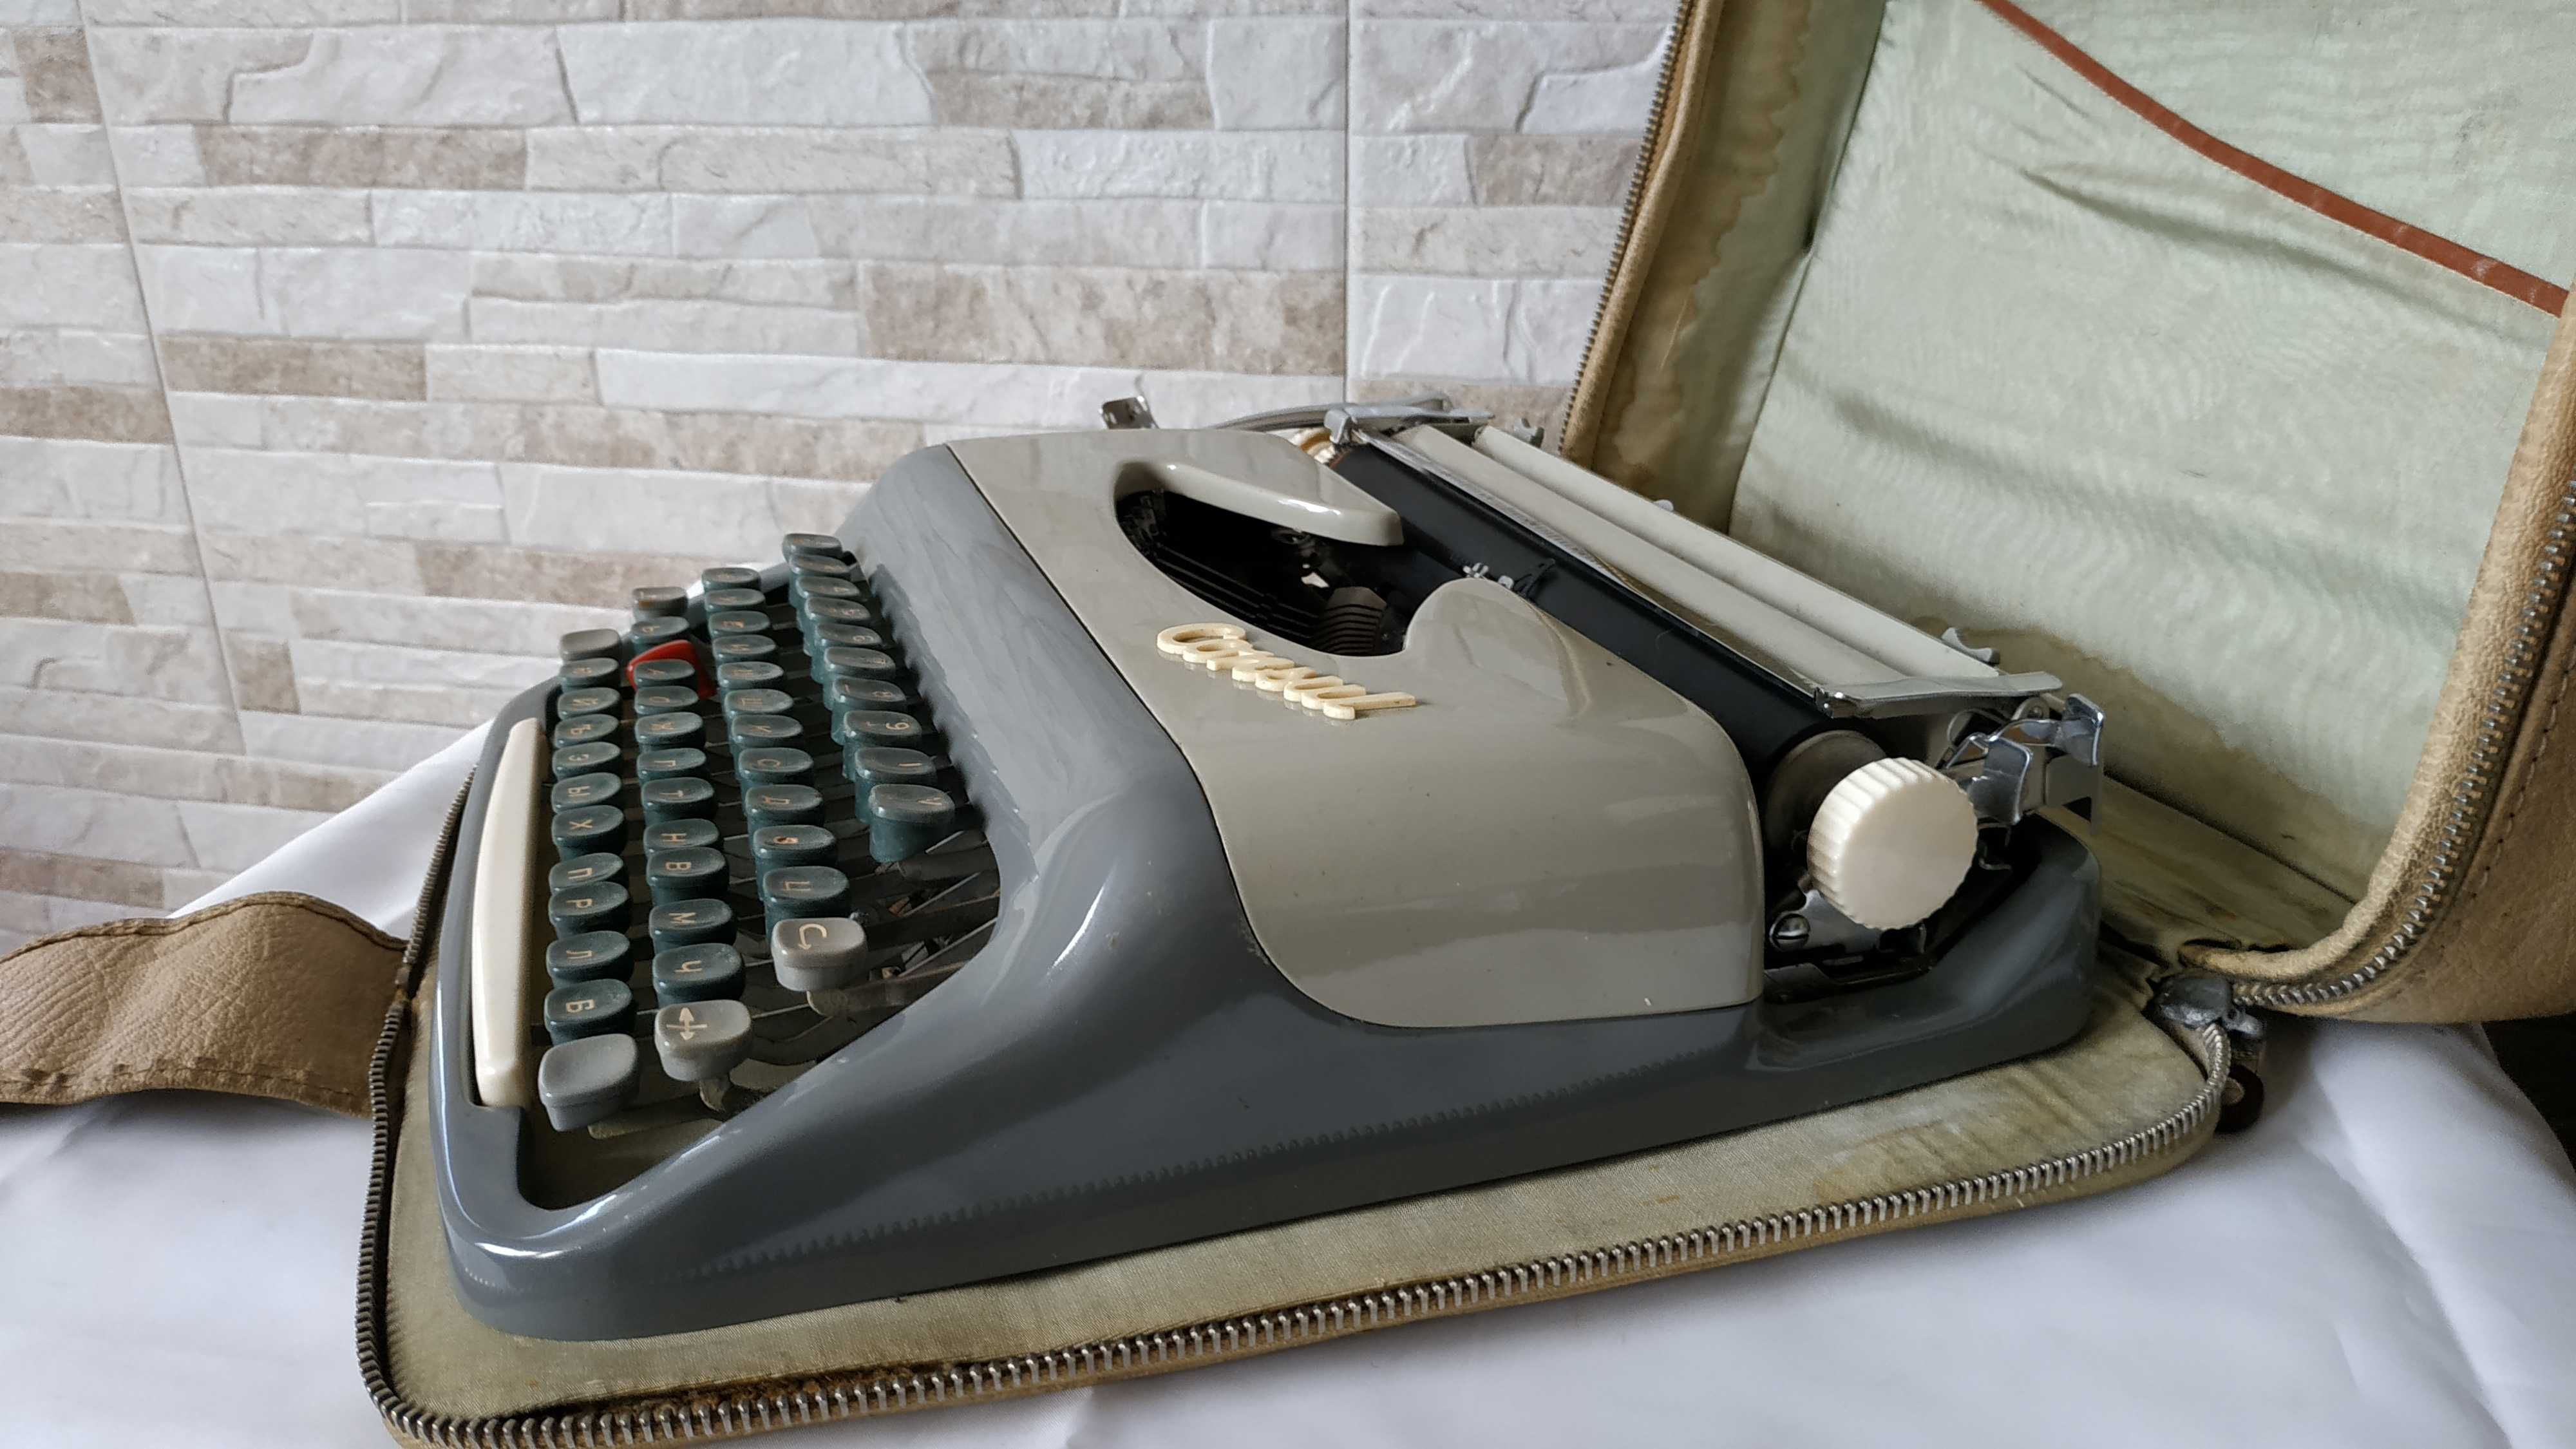 Стара пишеща машина CONSUL 232 - Made in Czechoslovakia - 1962 година